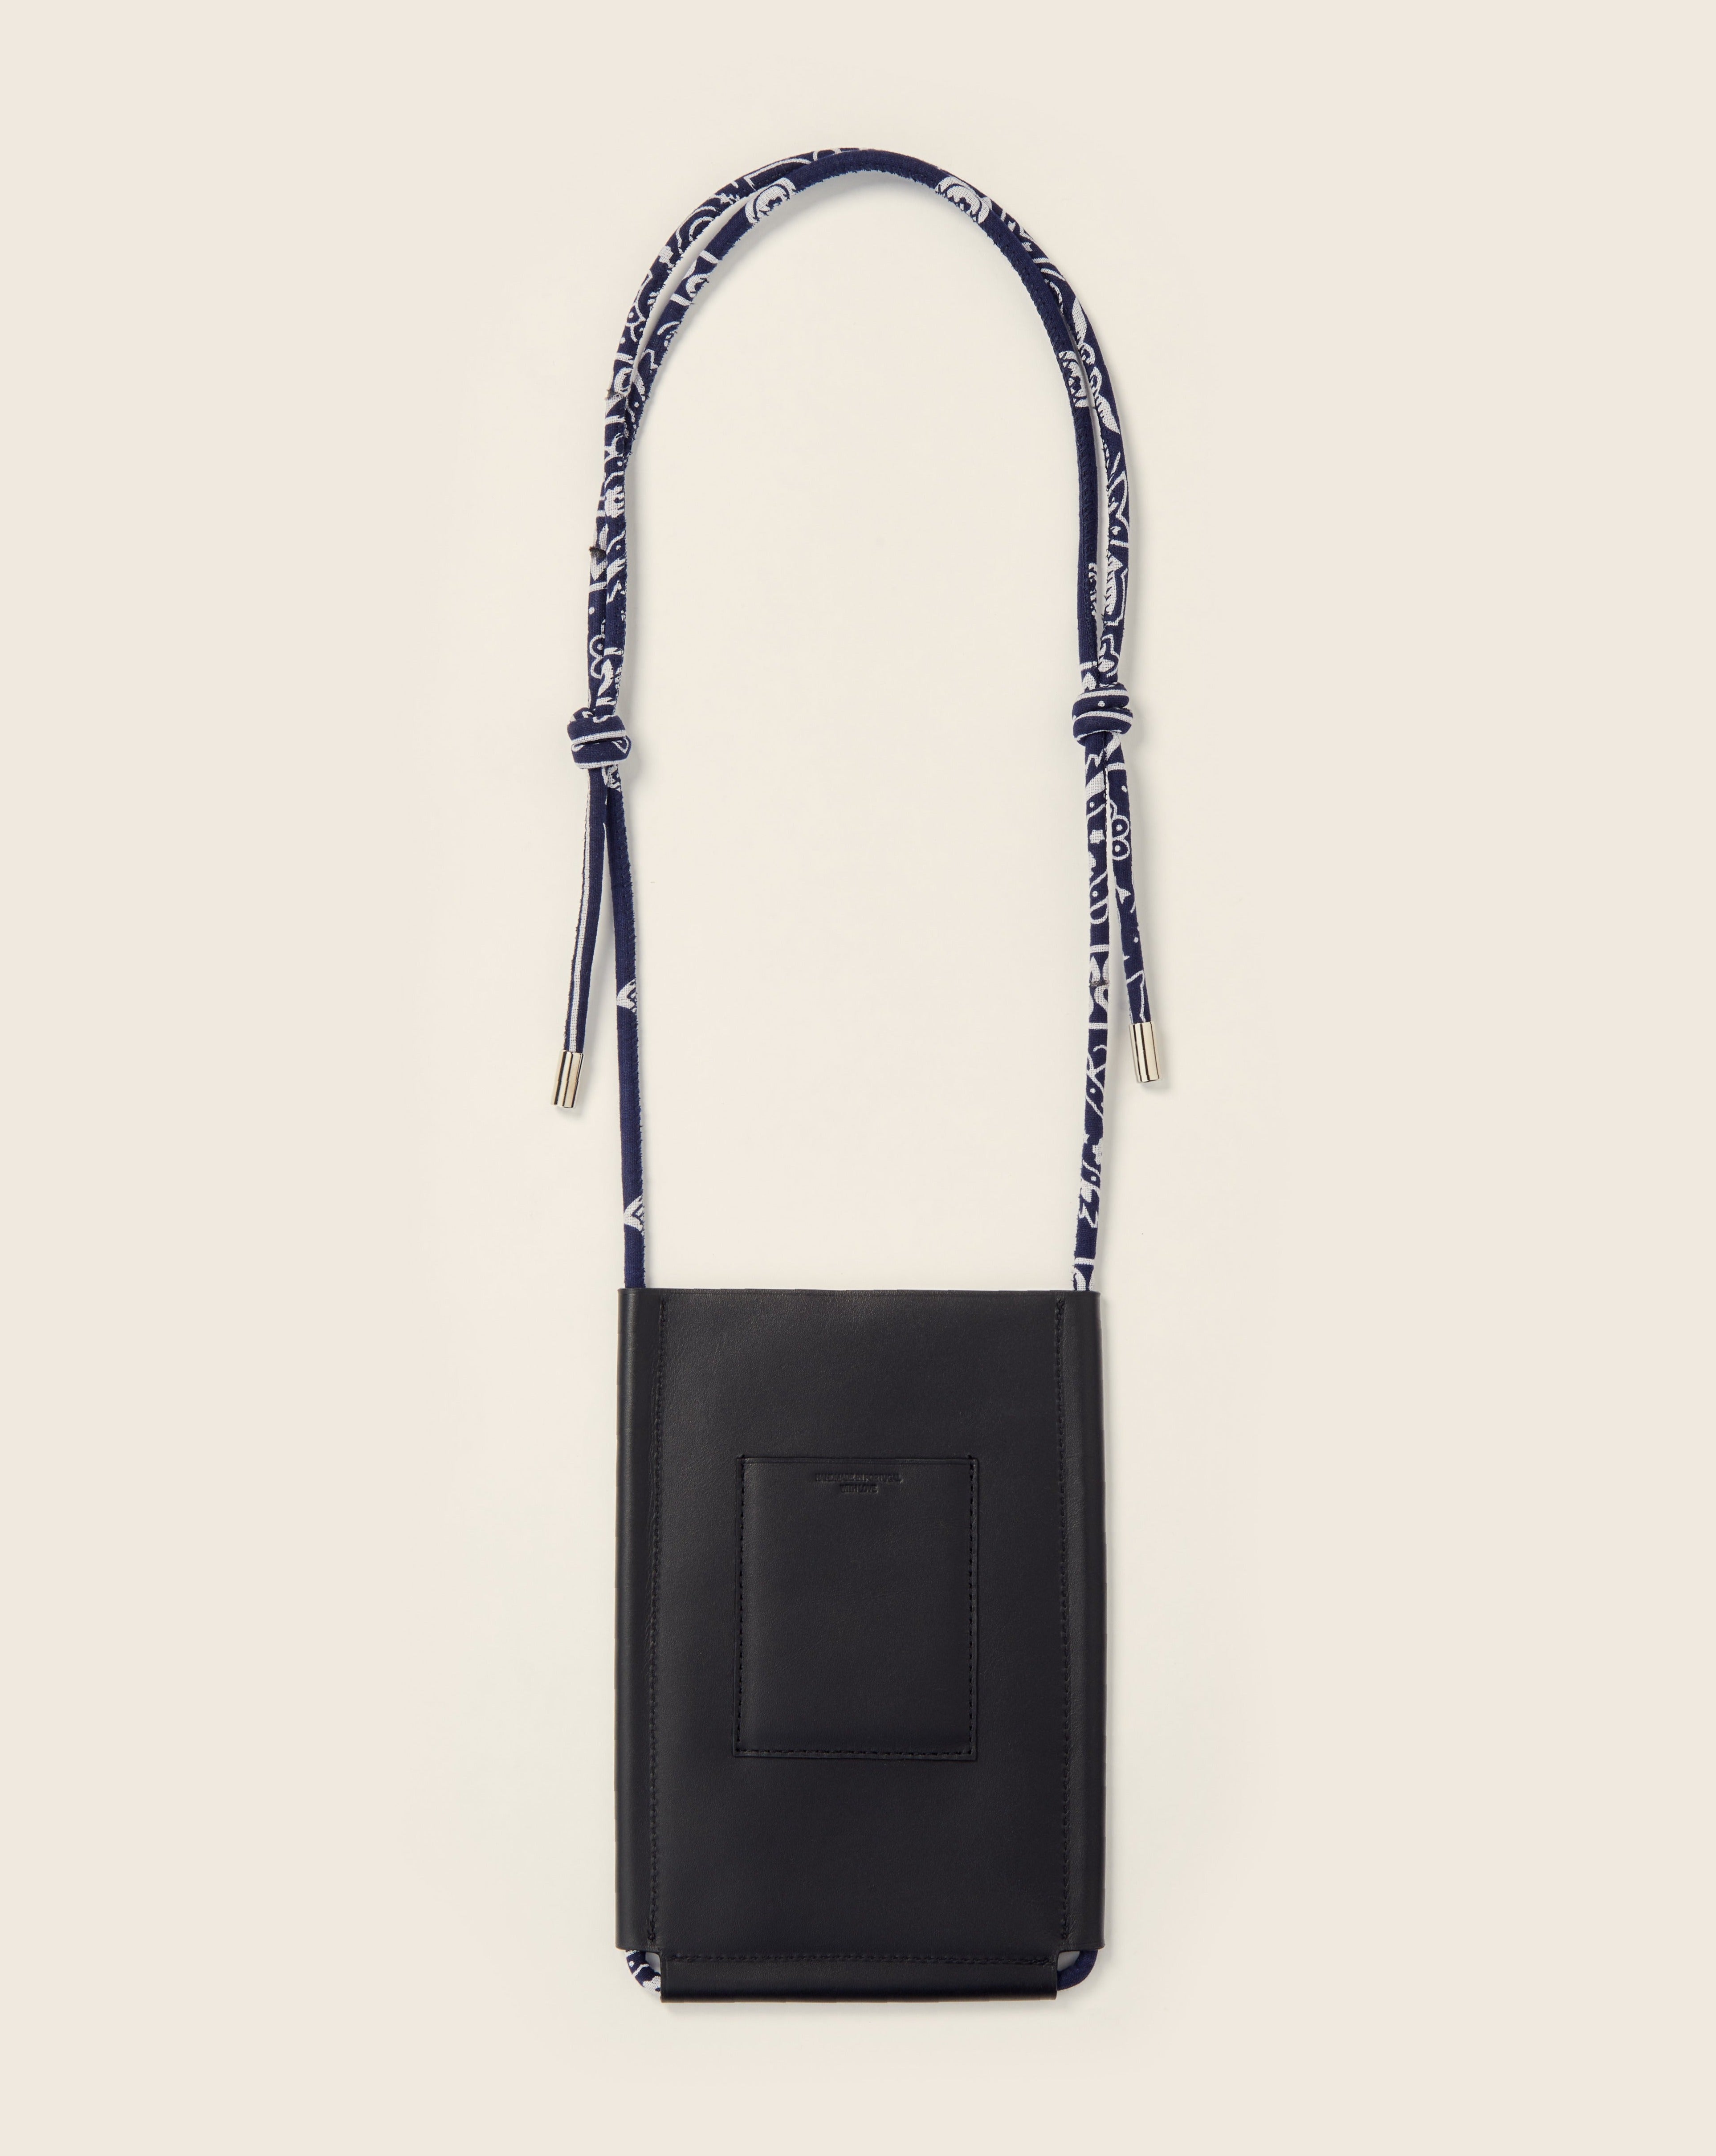 DENALI - Leather phone sleeve - Black leather & Bandana navy